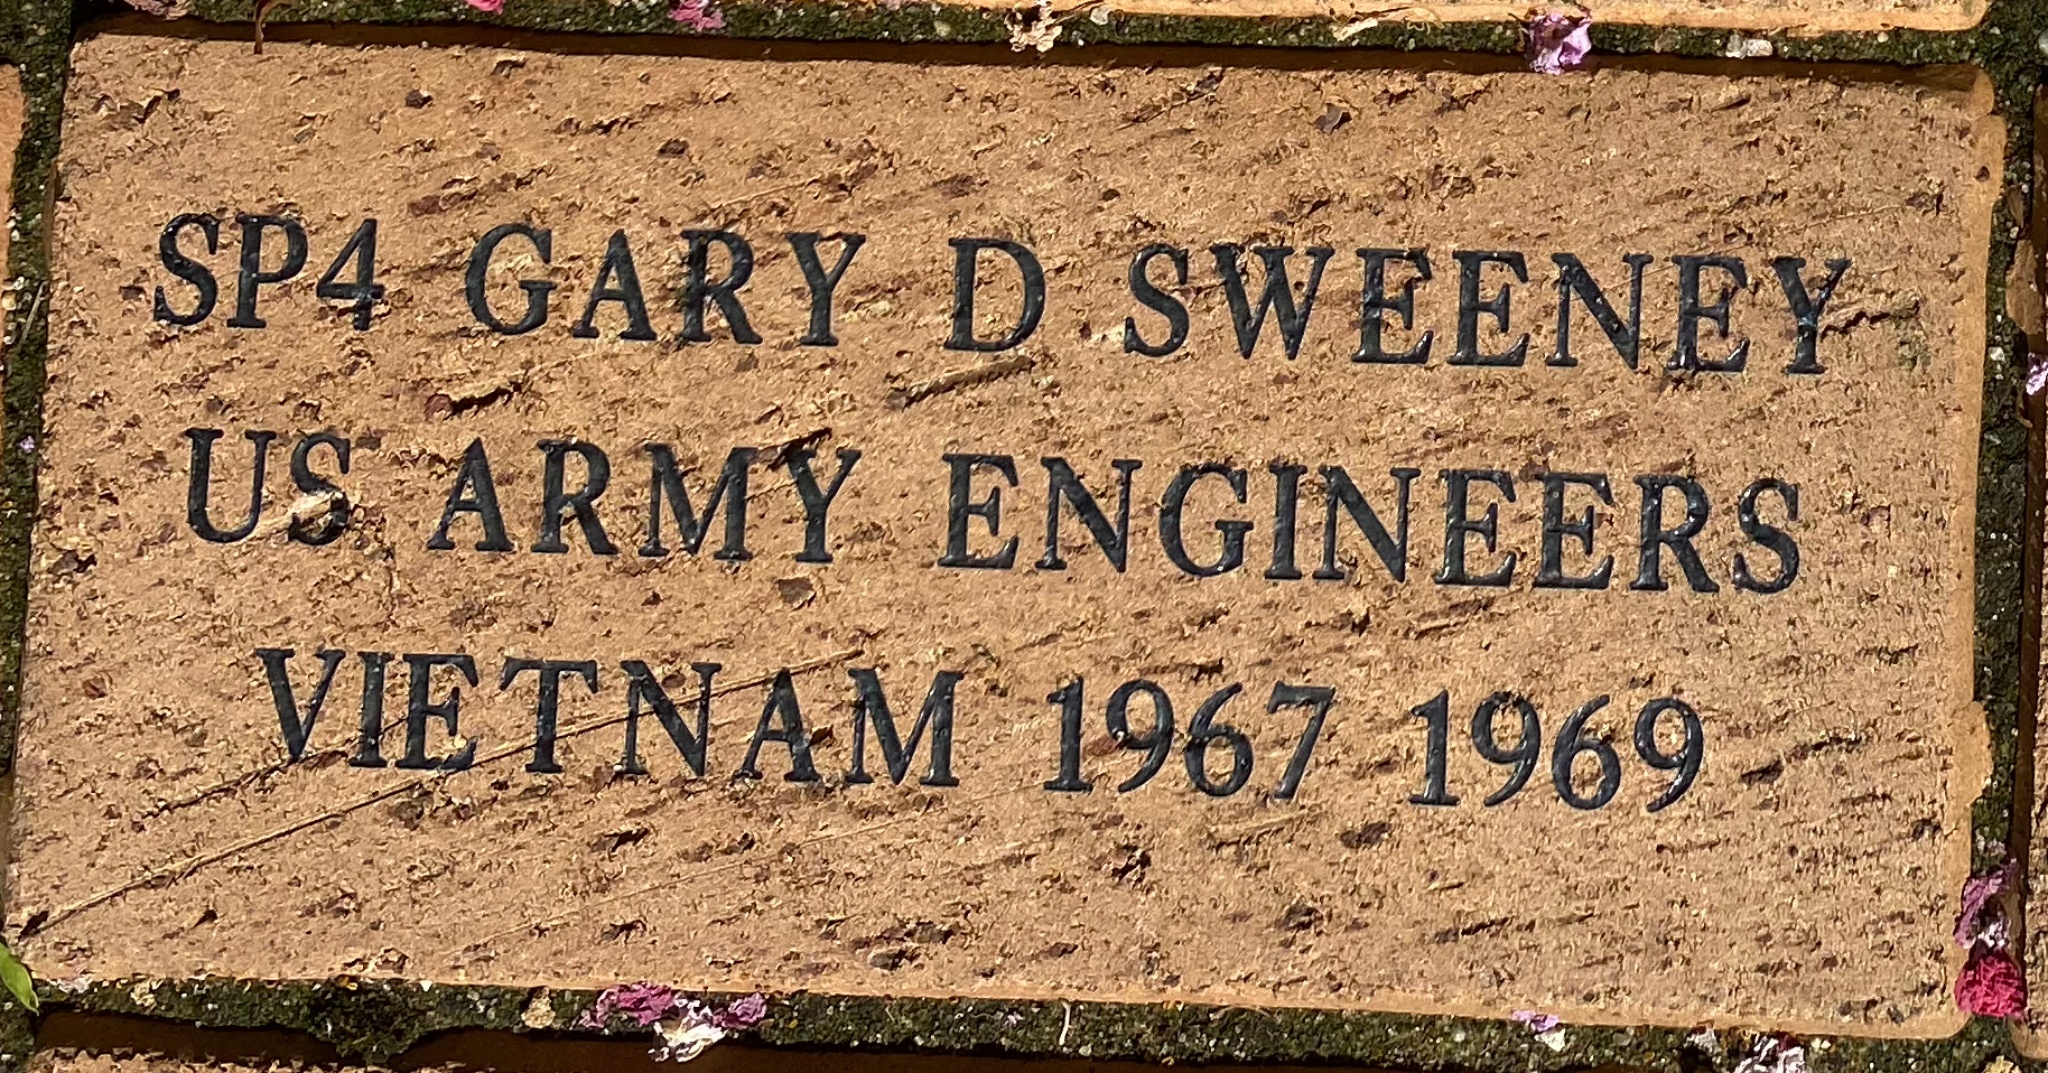 SP4 GARY D SWEENEY US ARMY ENGINEERS VIETNAM 1967-1969